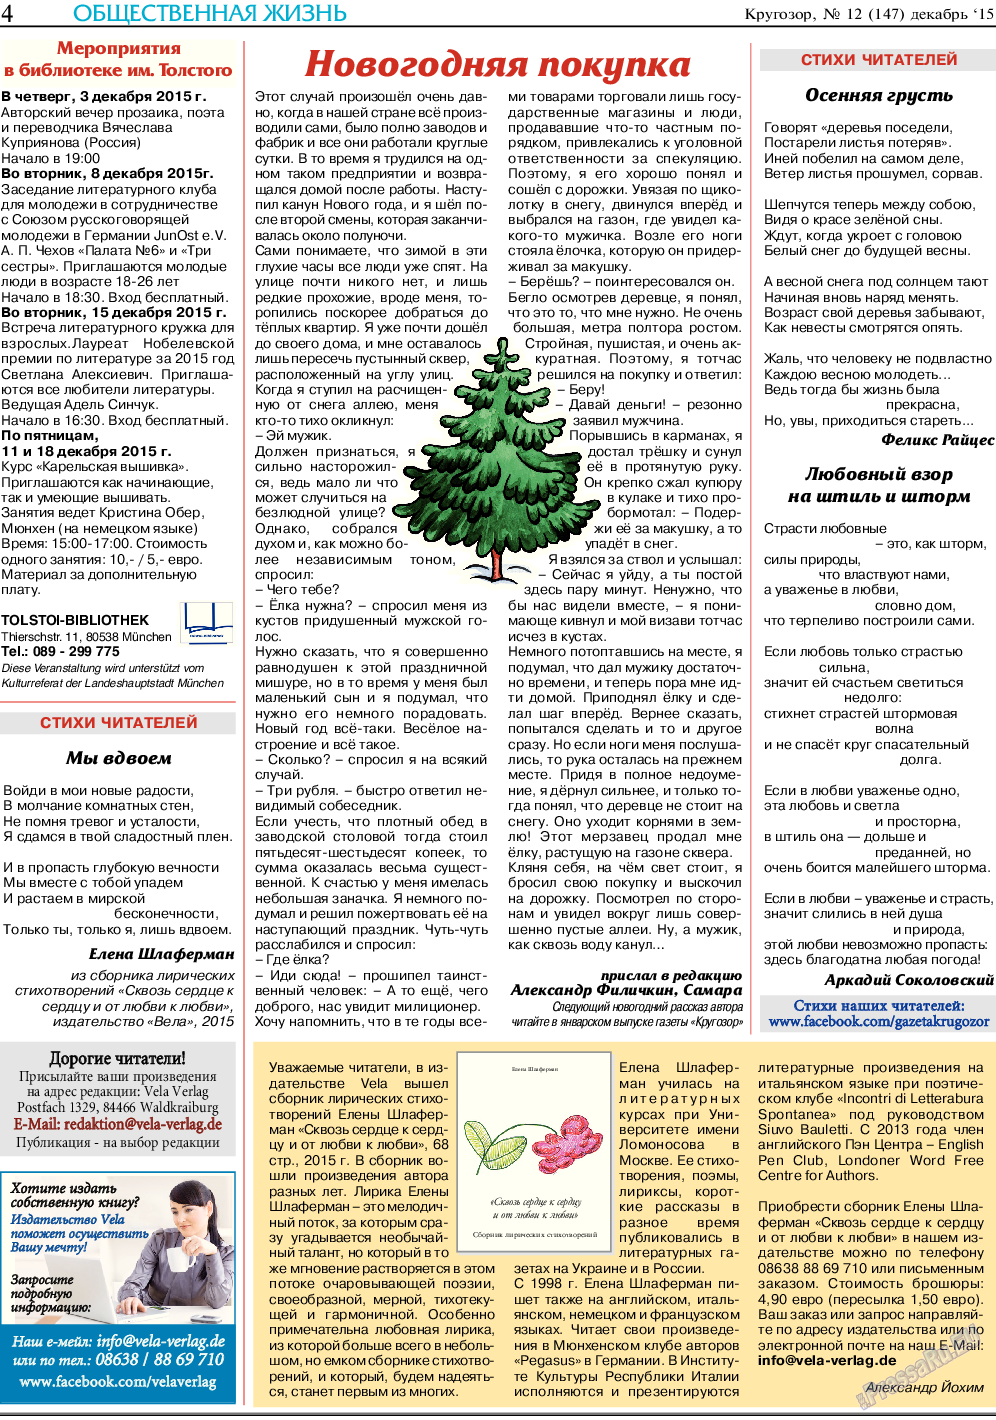 Кругозор (газета). 2015 год, номер 12, стр. 4